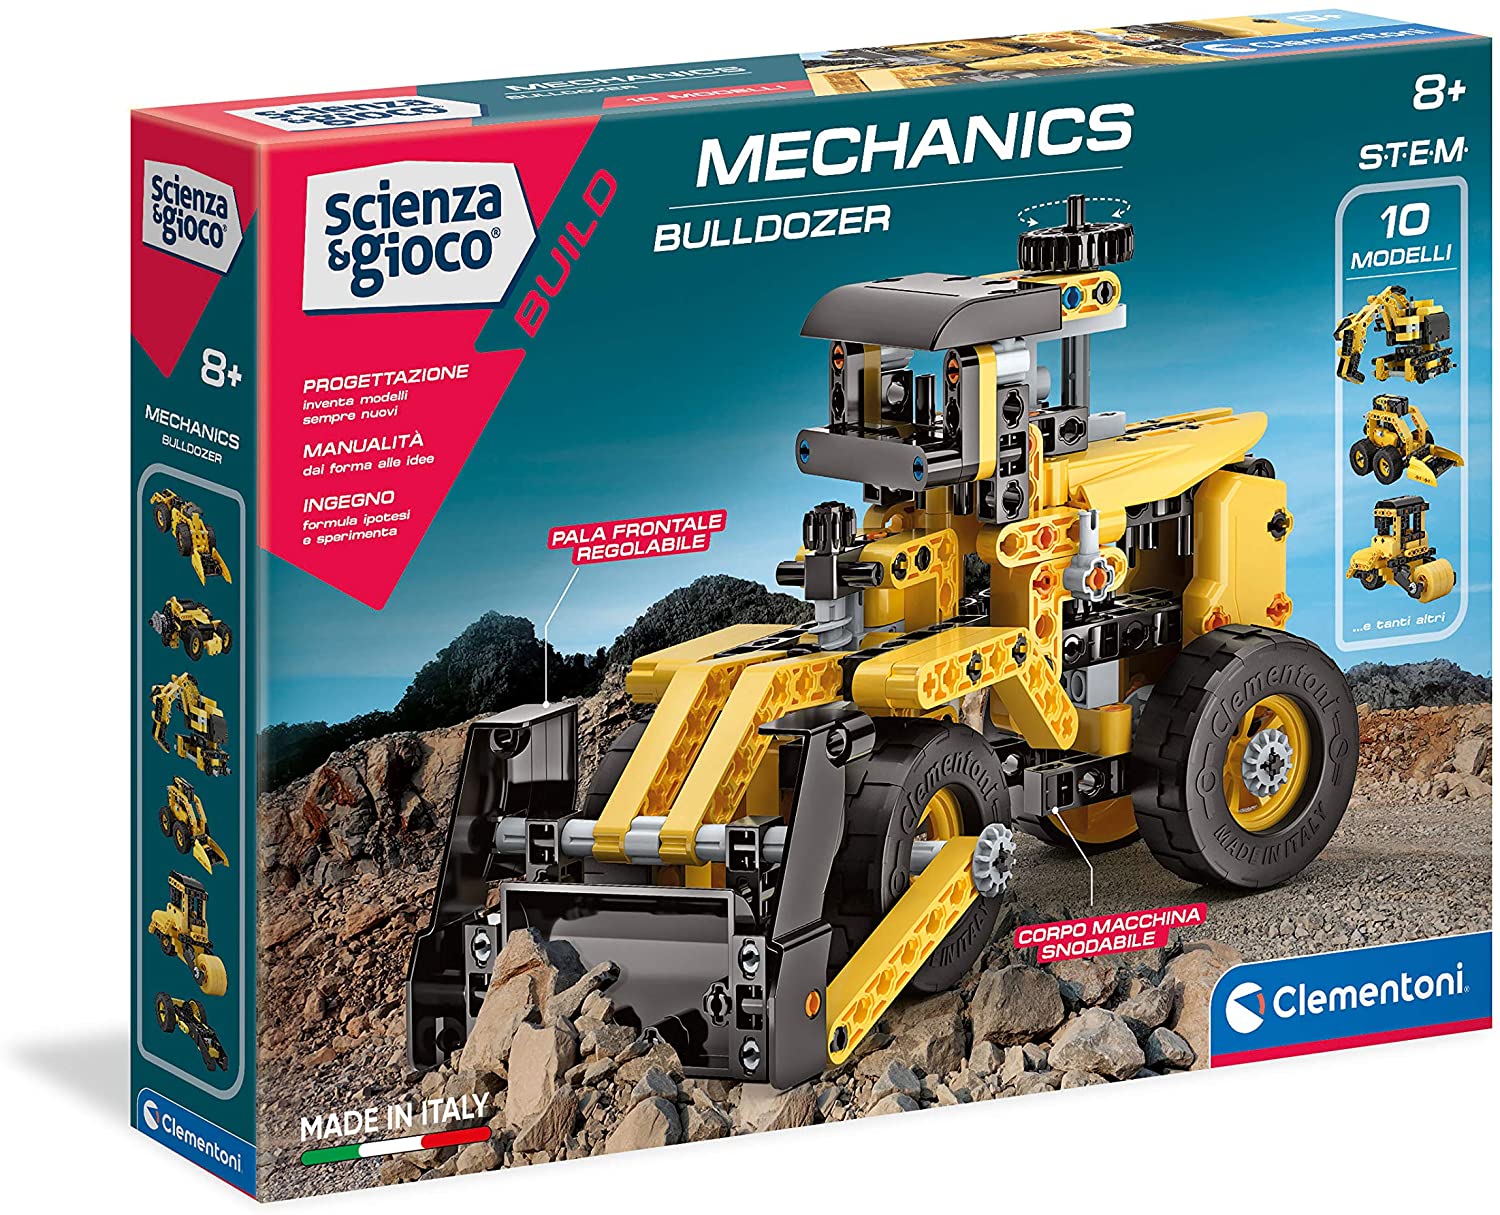 Mechanics Bulldozer - Clicca l'immagine per chiudere